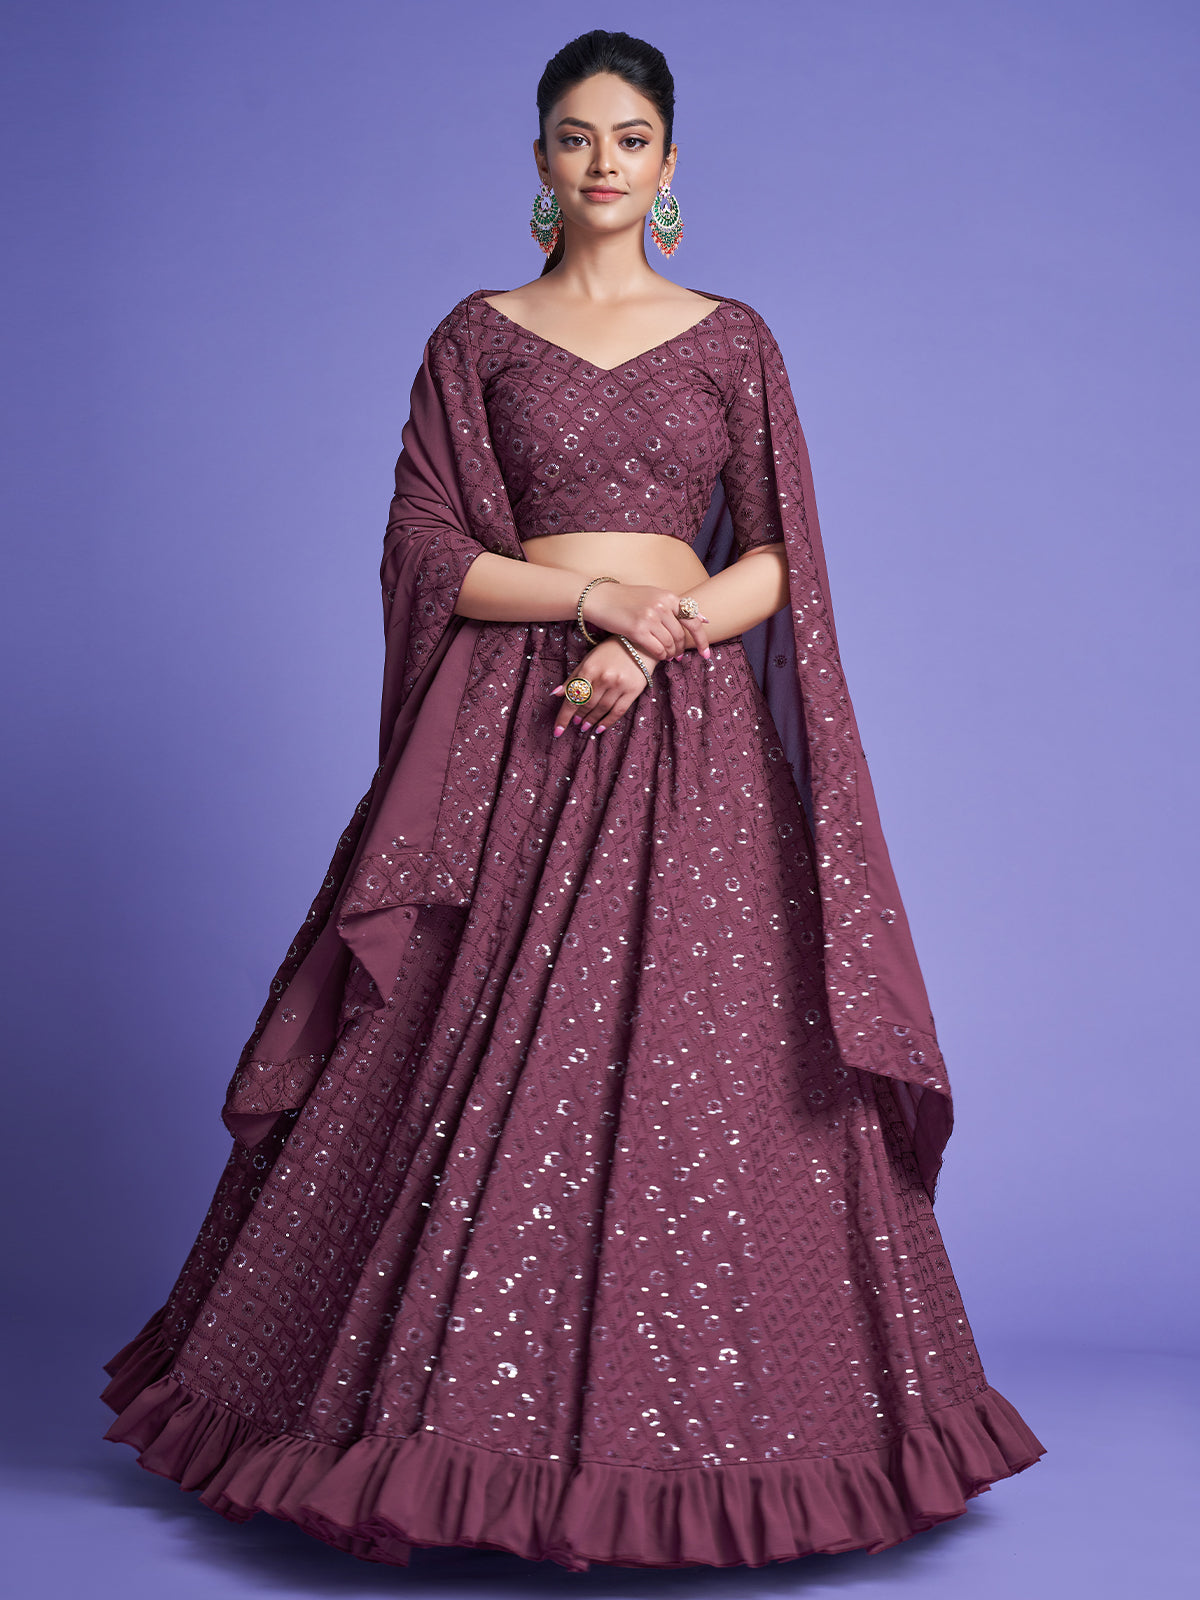 Fashionable Latest Designer Lehenga Choli Under 1500 – TheDesignerSaree